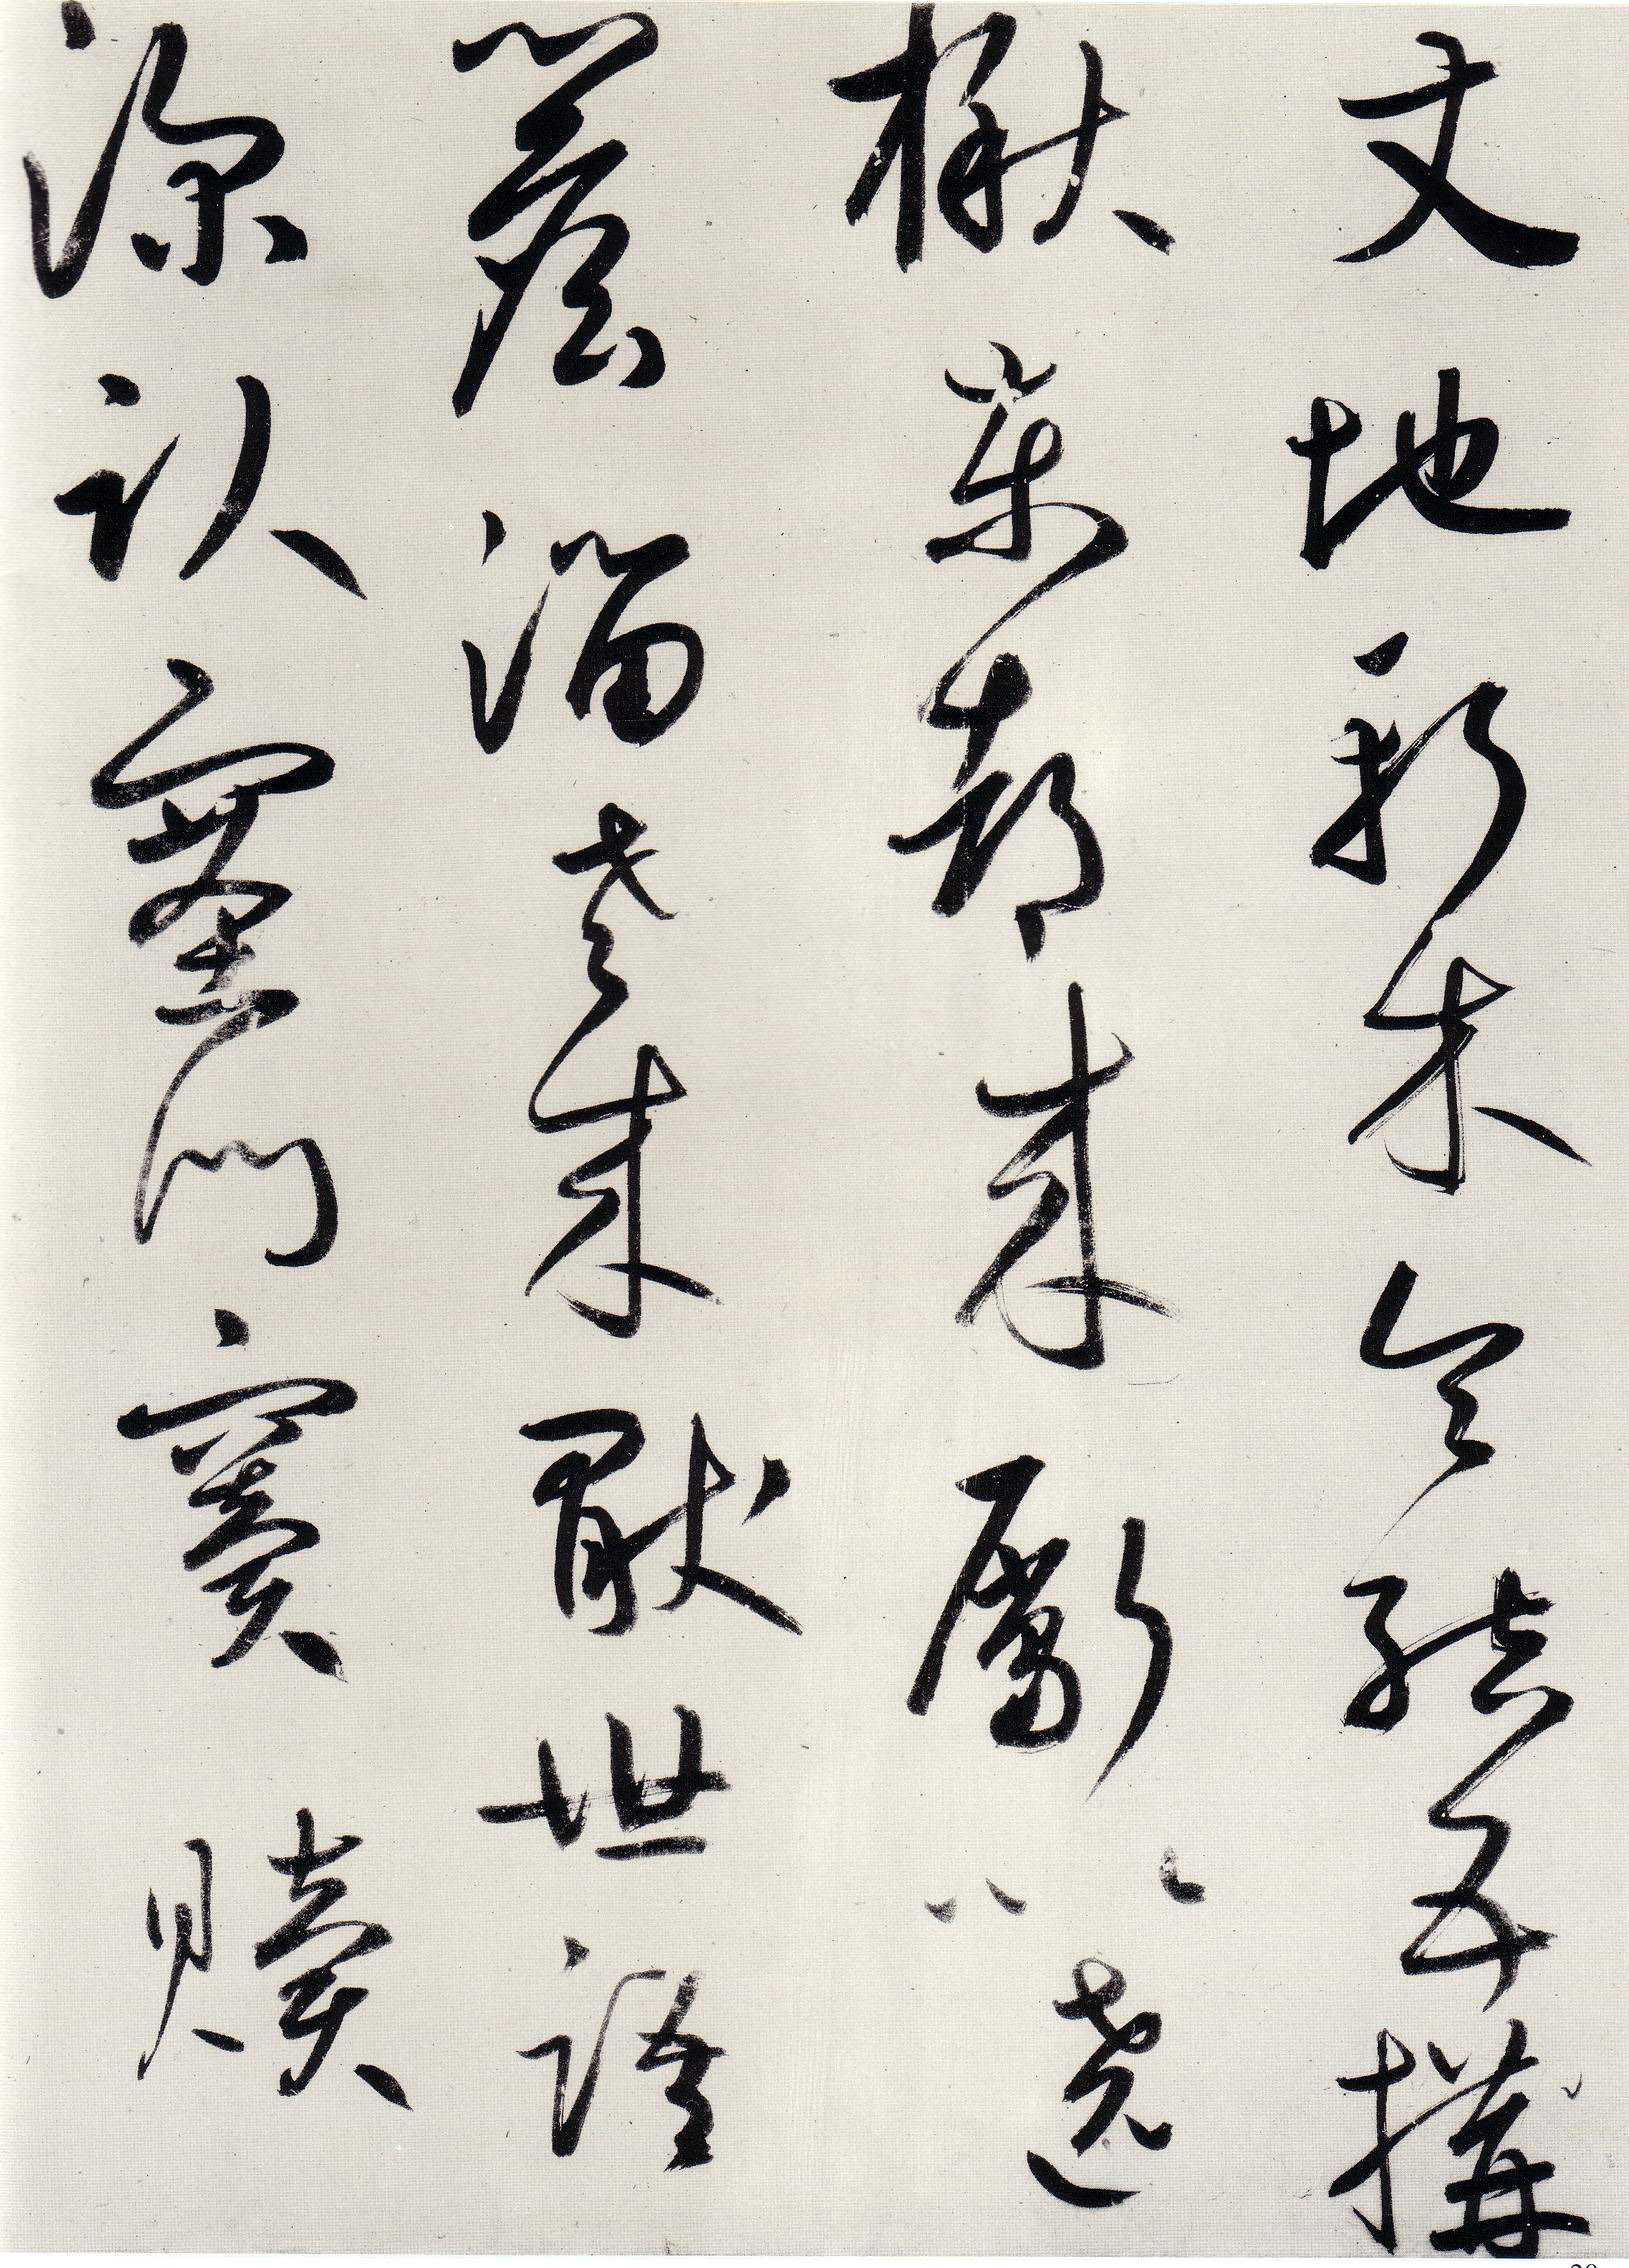 鲜于枢《王安石杂诗卷》-辽宁博物馆藏(图20)